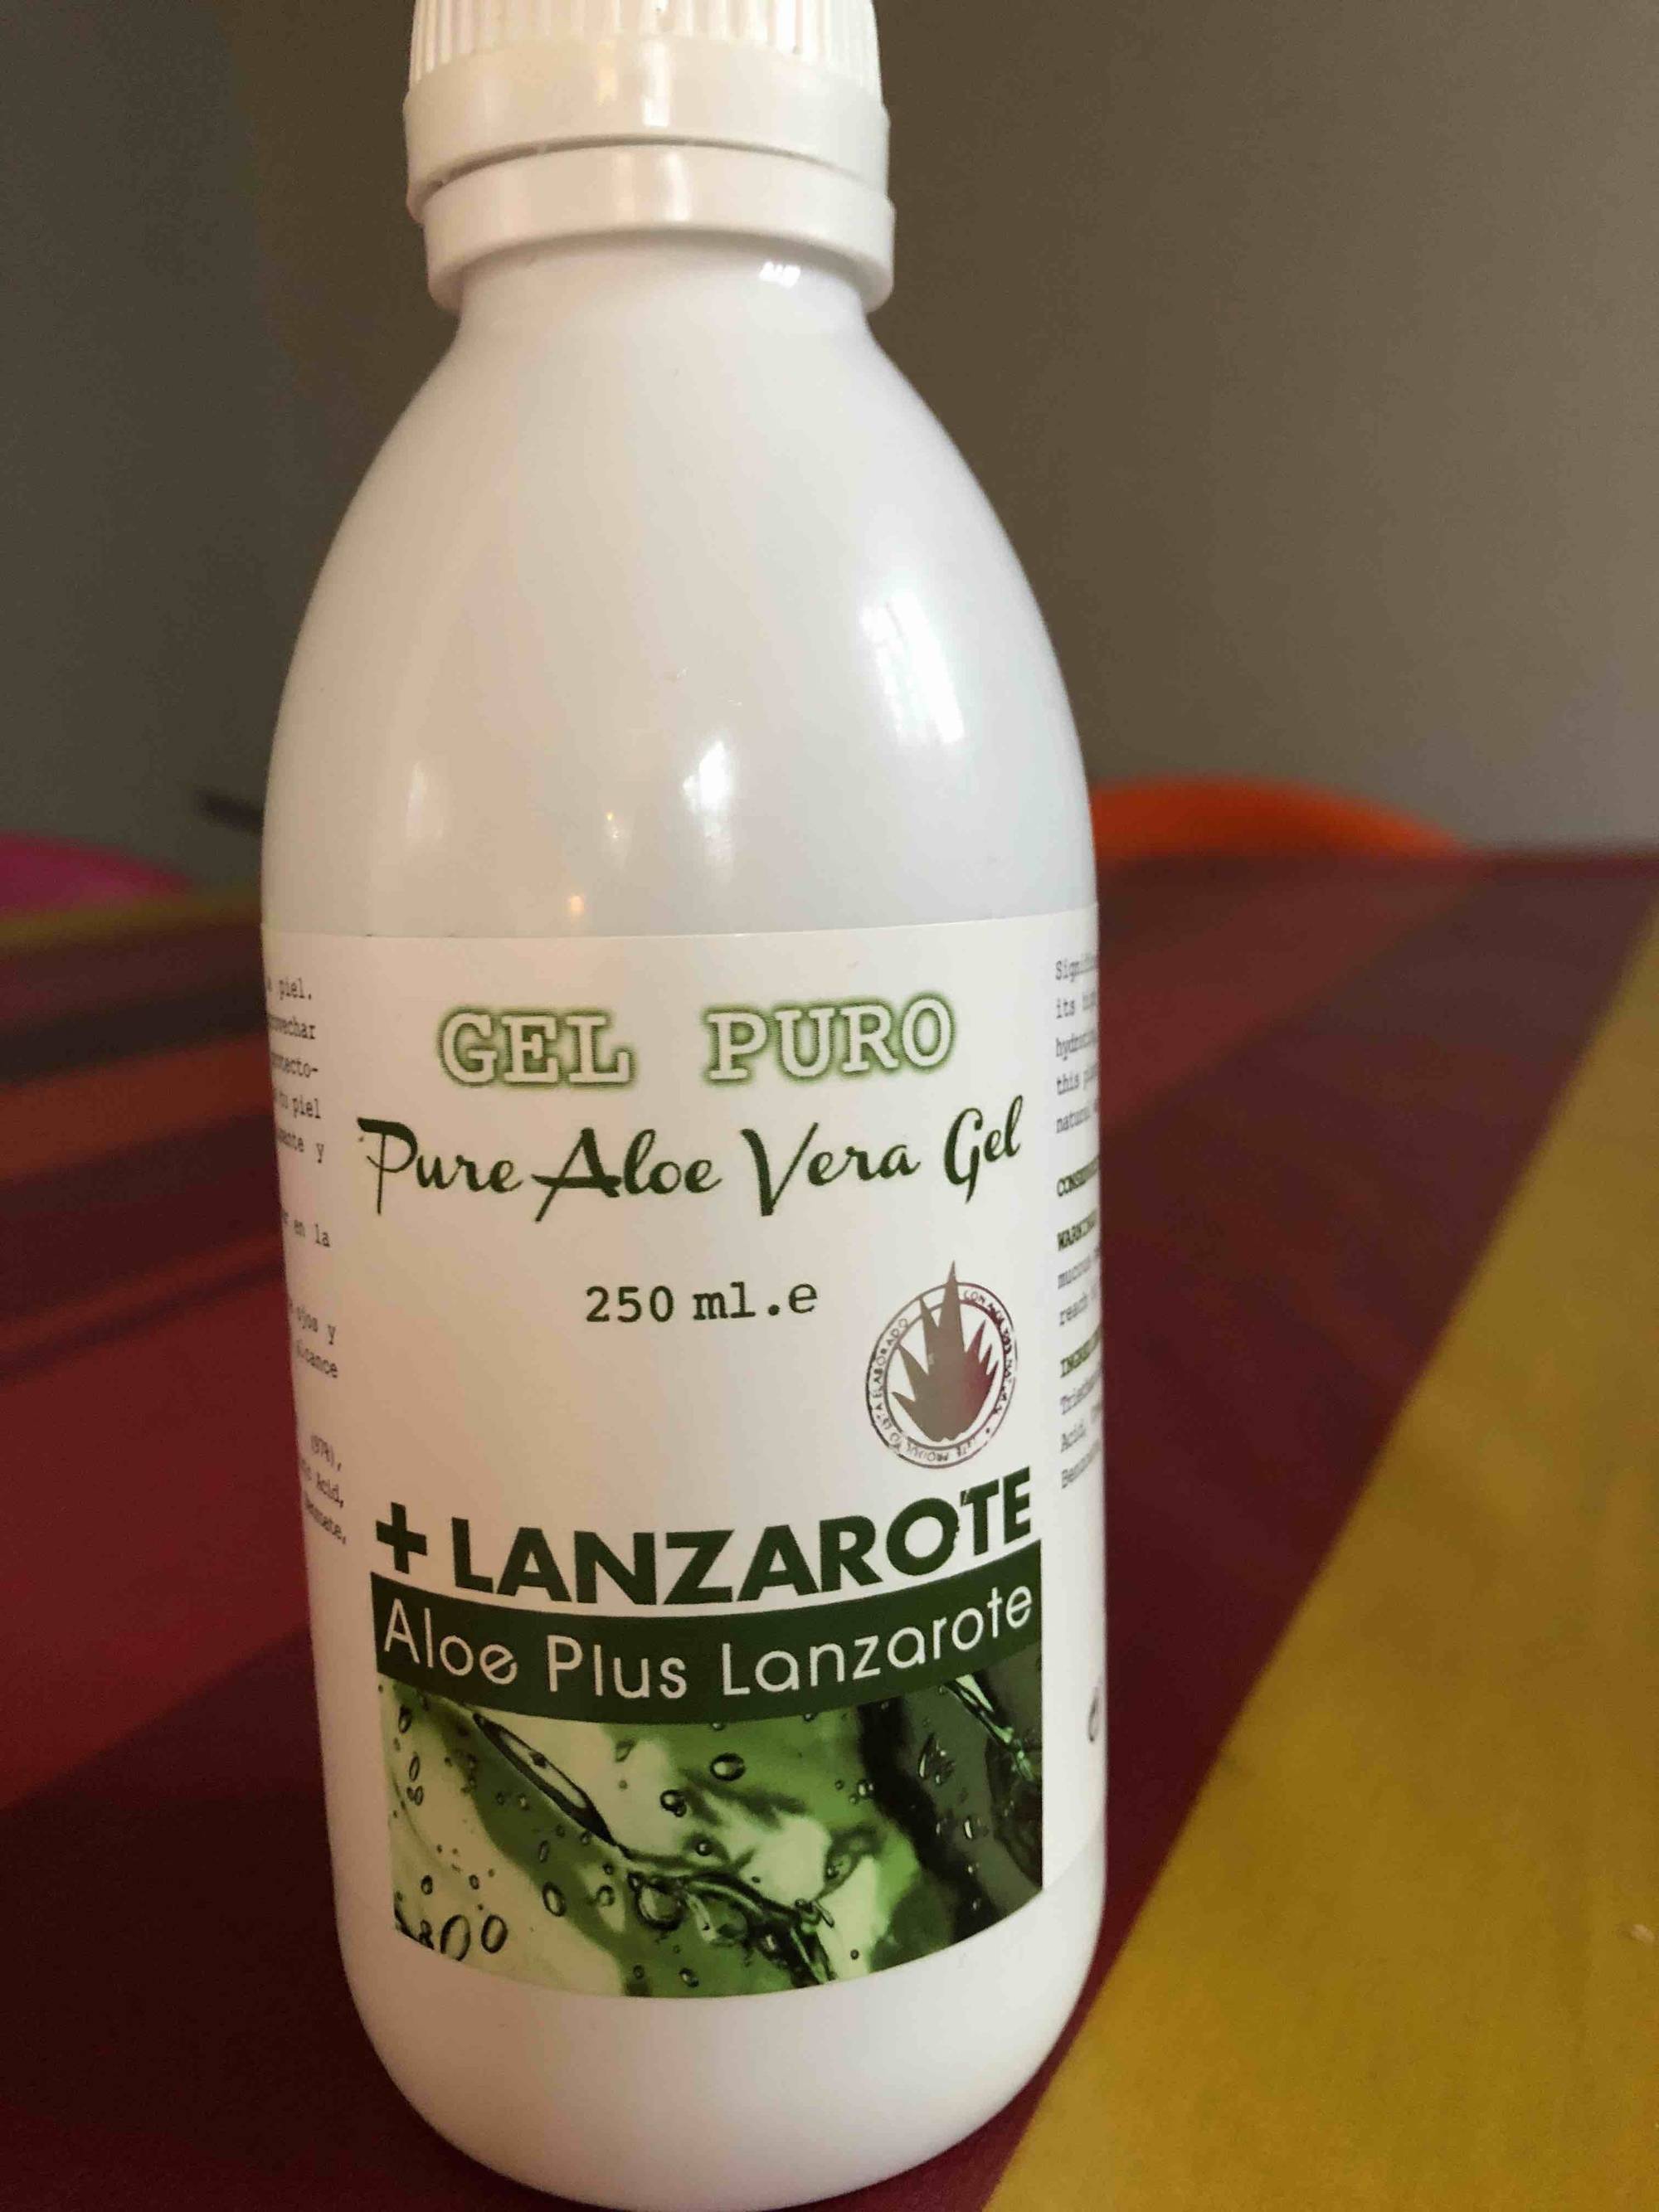 ALOE PLUS LANZAROTE - Gel puro - Pure Aloe Vera Gel